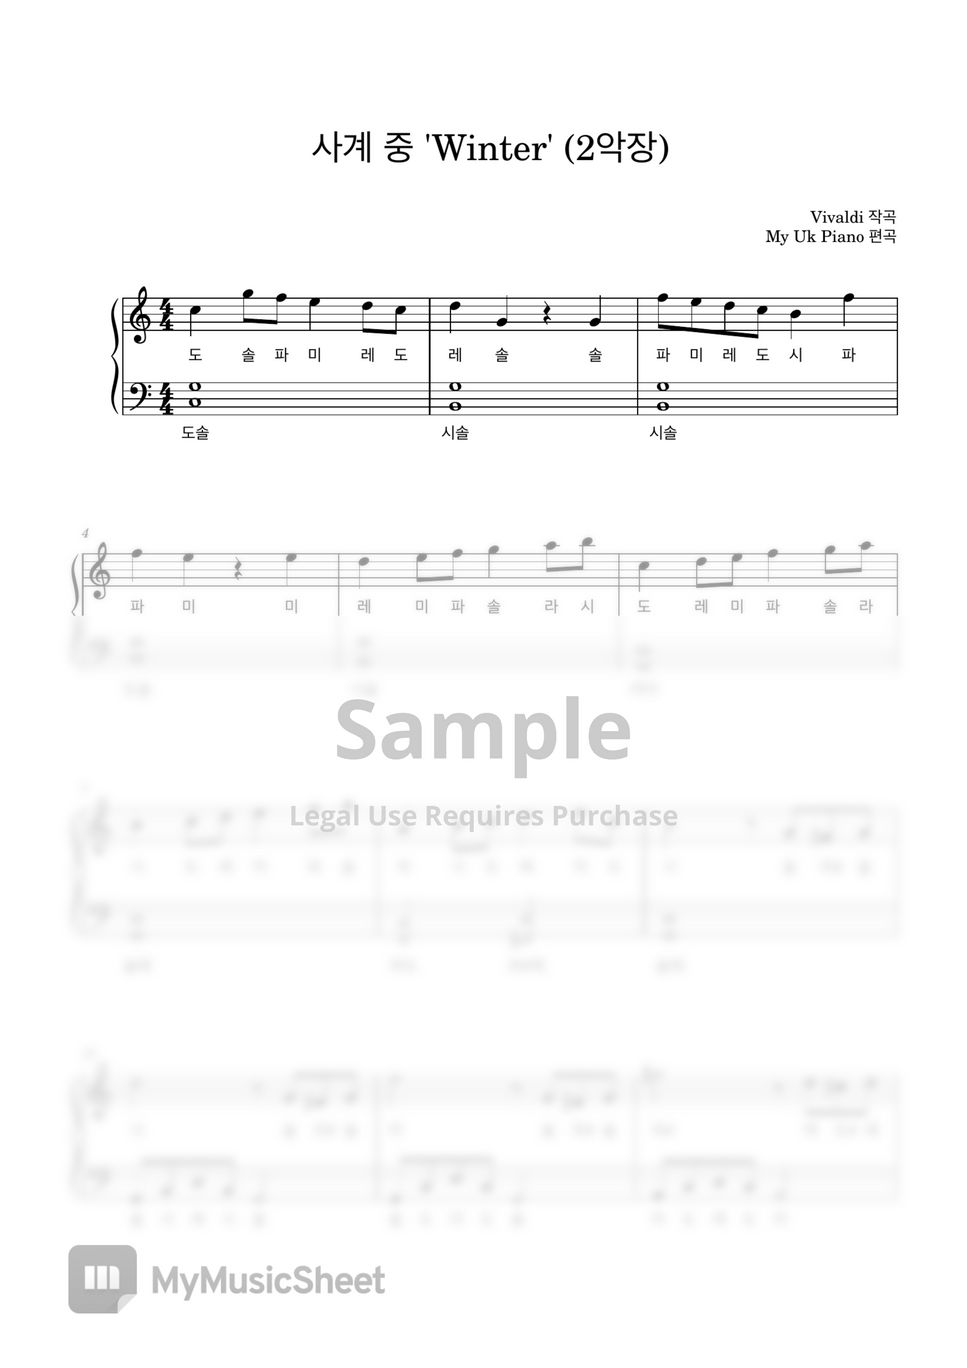 비발디 - 비발디 '사계 중겨울' (2악장) (쉬운계이름악보) by My Uk Piano